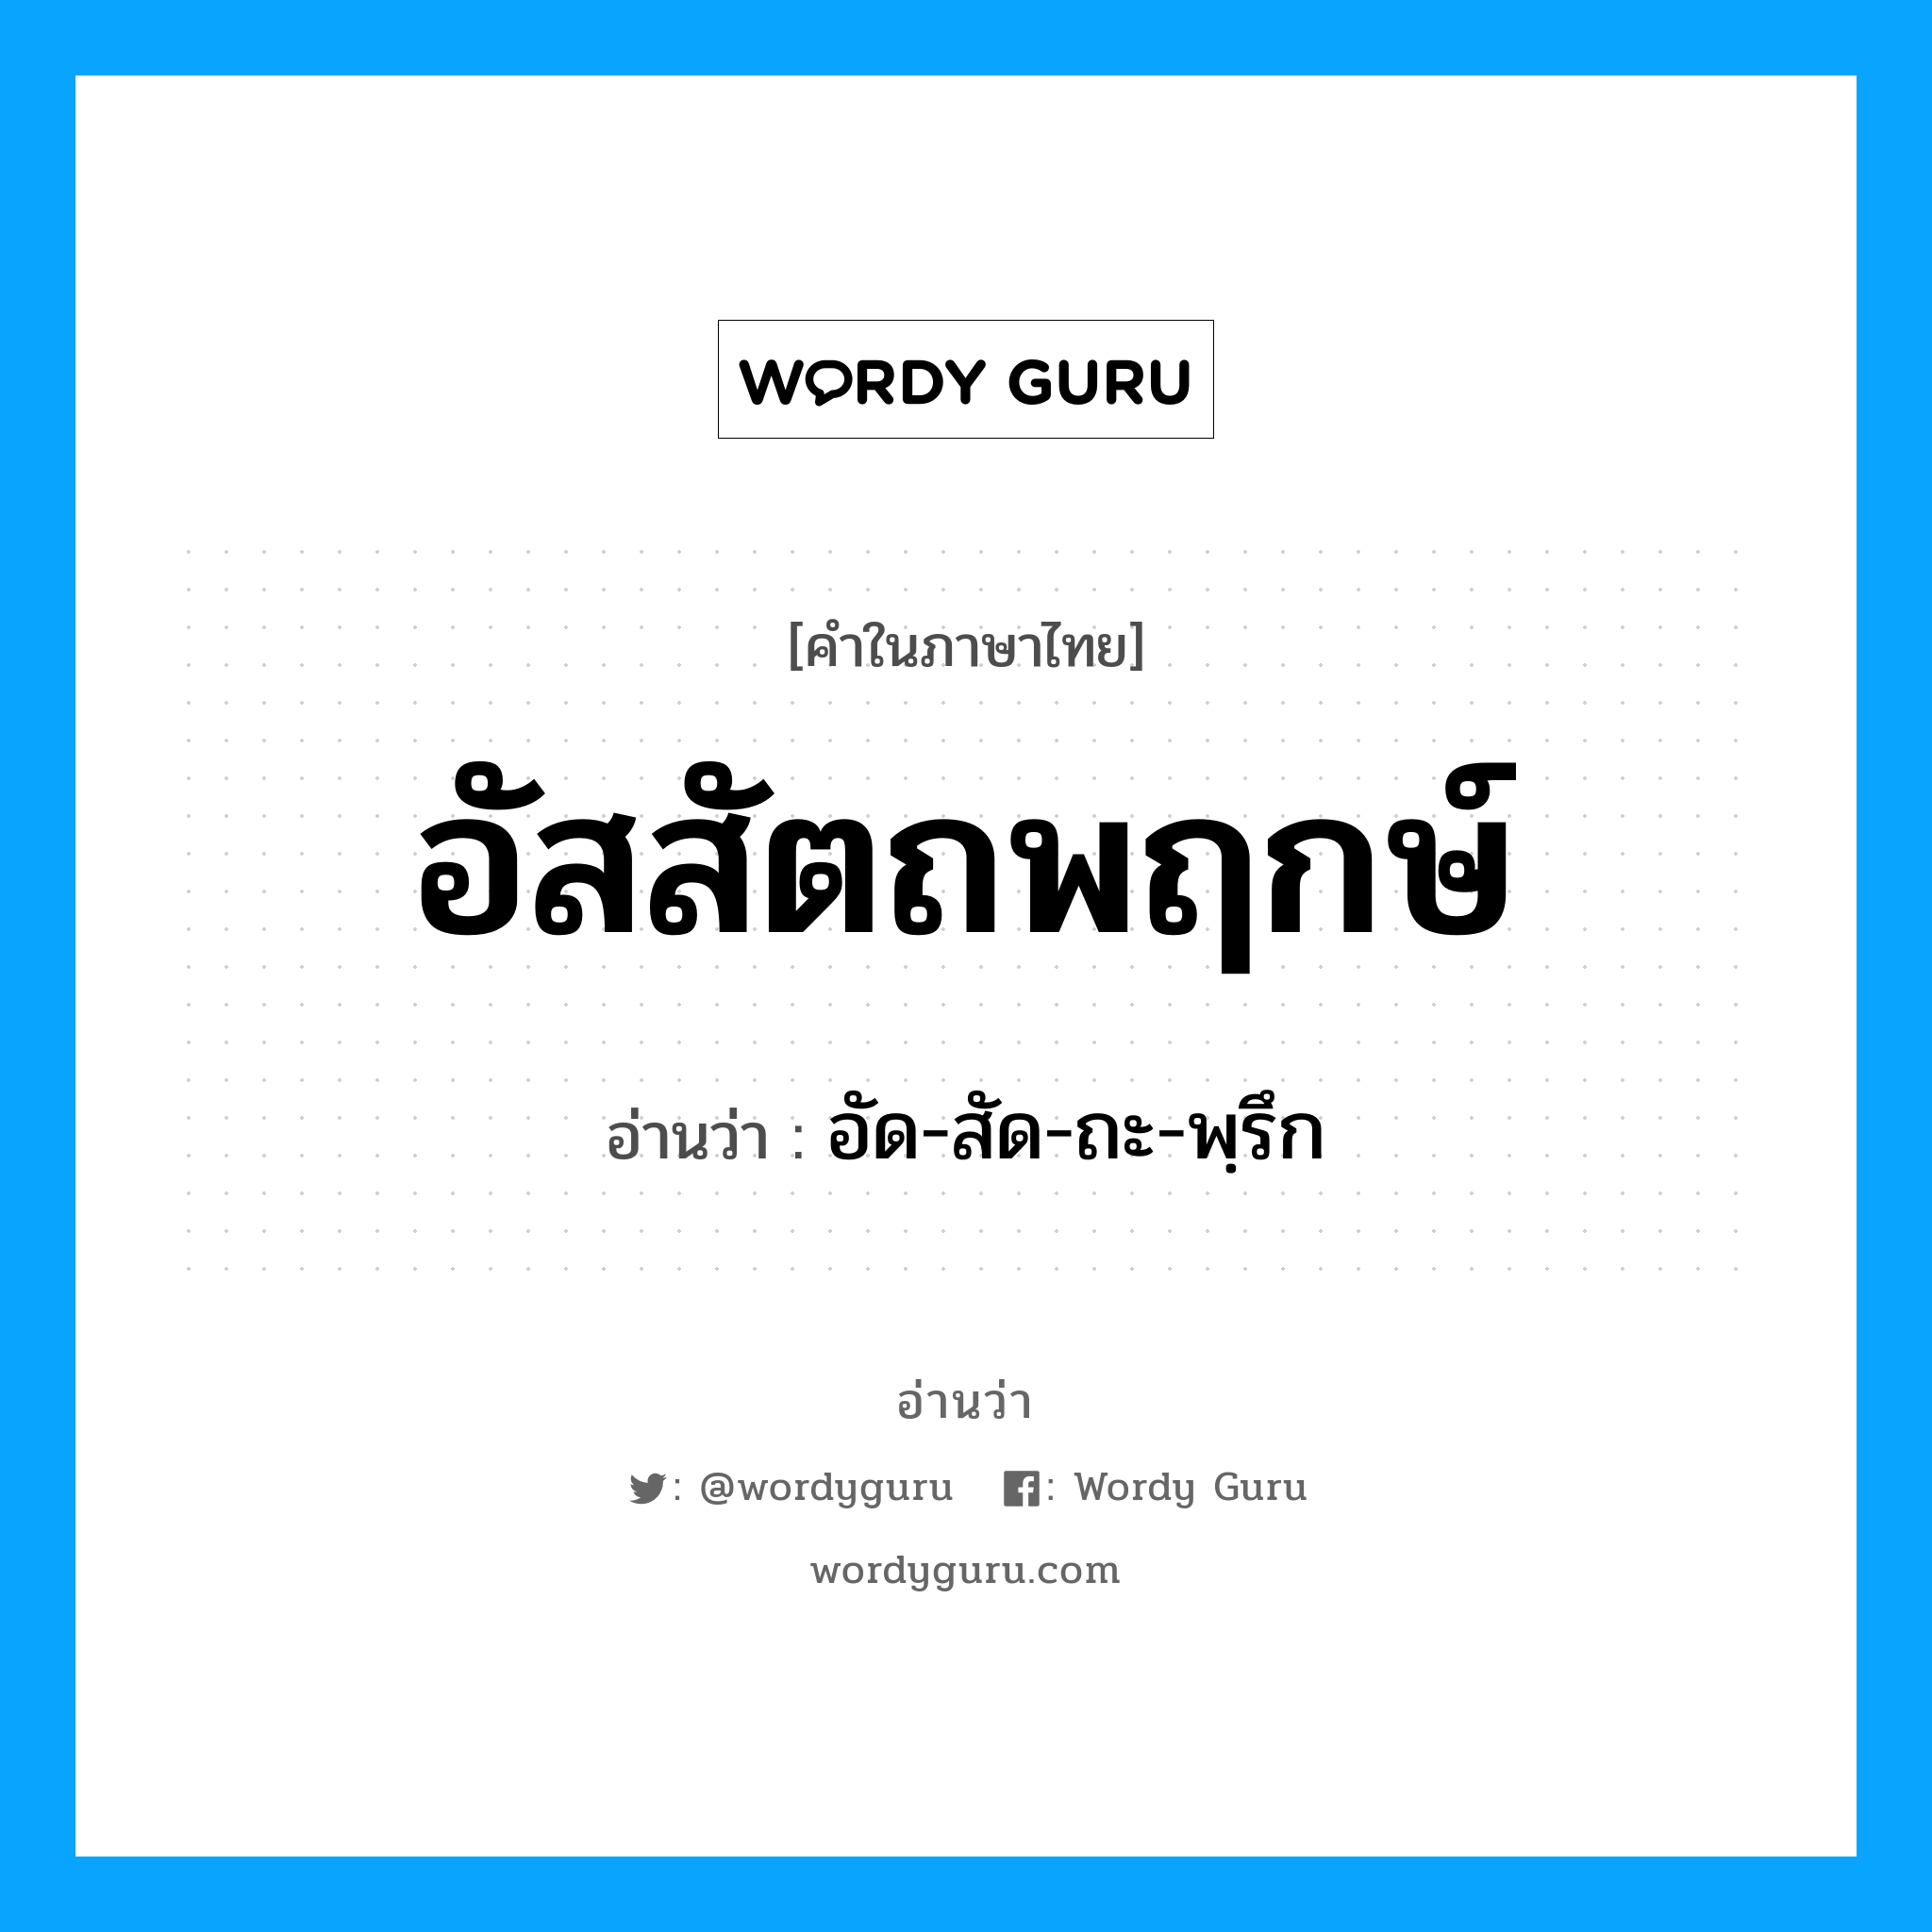 อัด-สัด-ถะ-พฺรึก เป็นคำอ่านของคำไหน?, คำในภาษาไทย อัด-สัด-ถะ-พฺรึก อ่านว่า อัสสัตถพฤกษ์